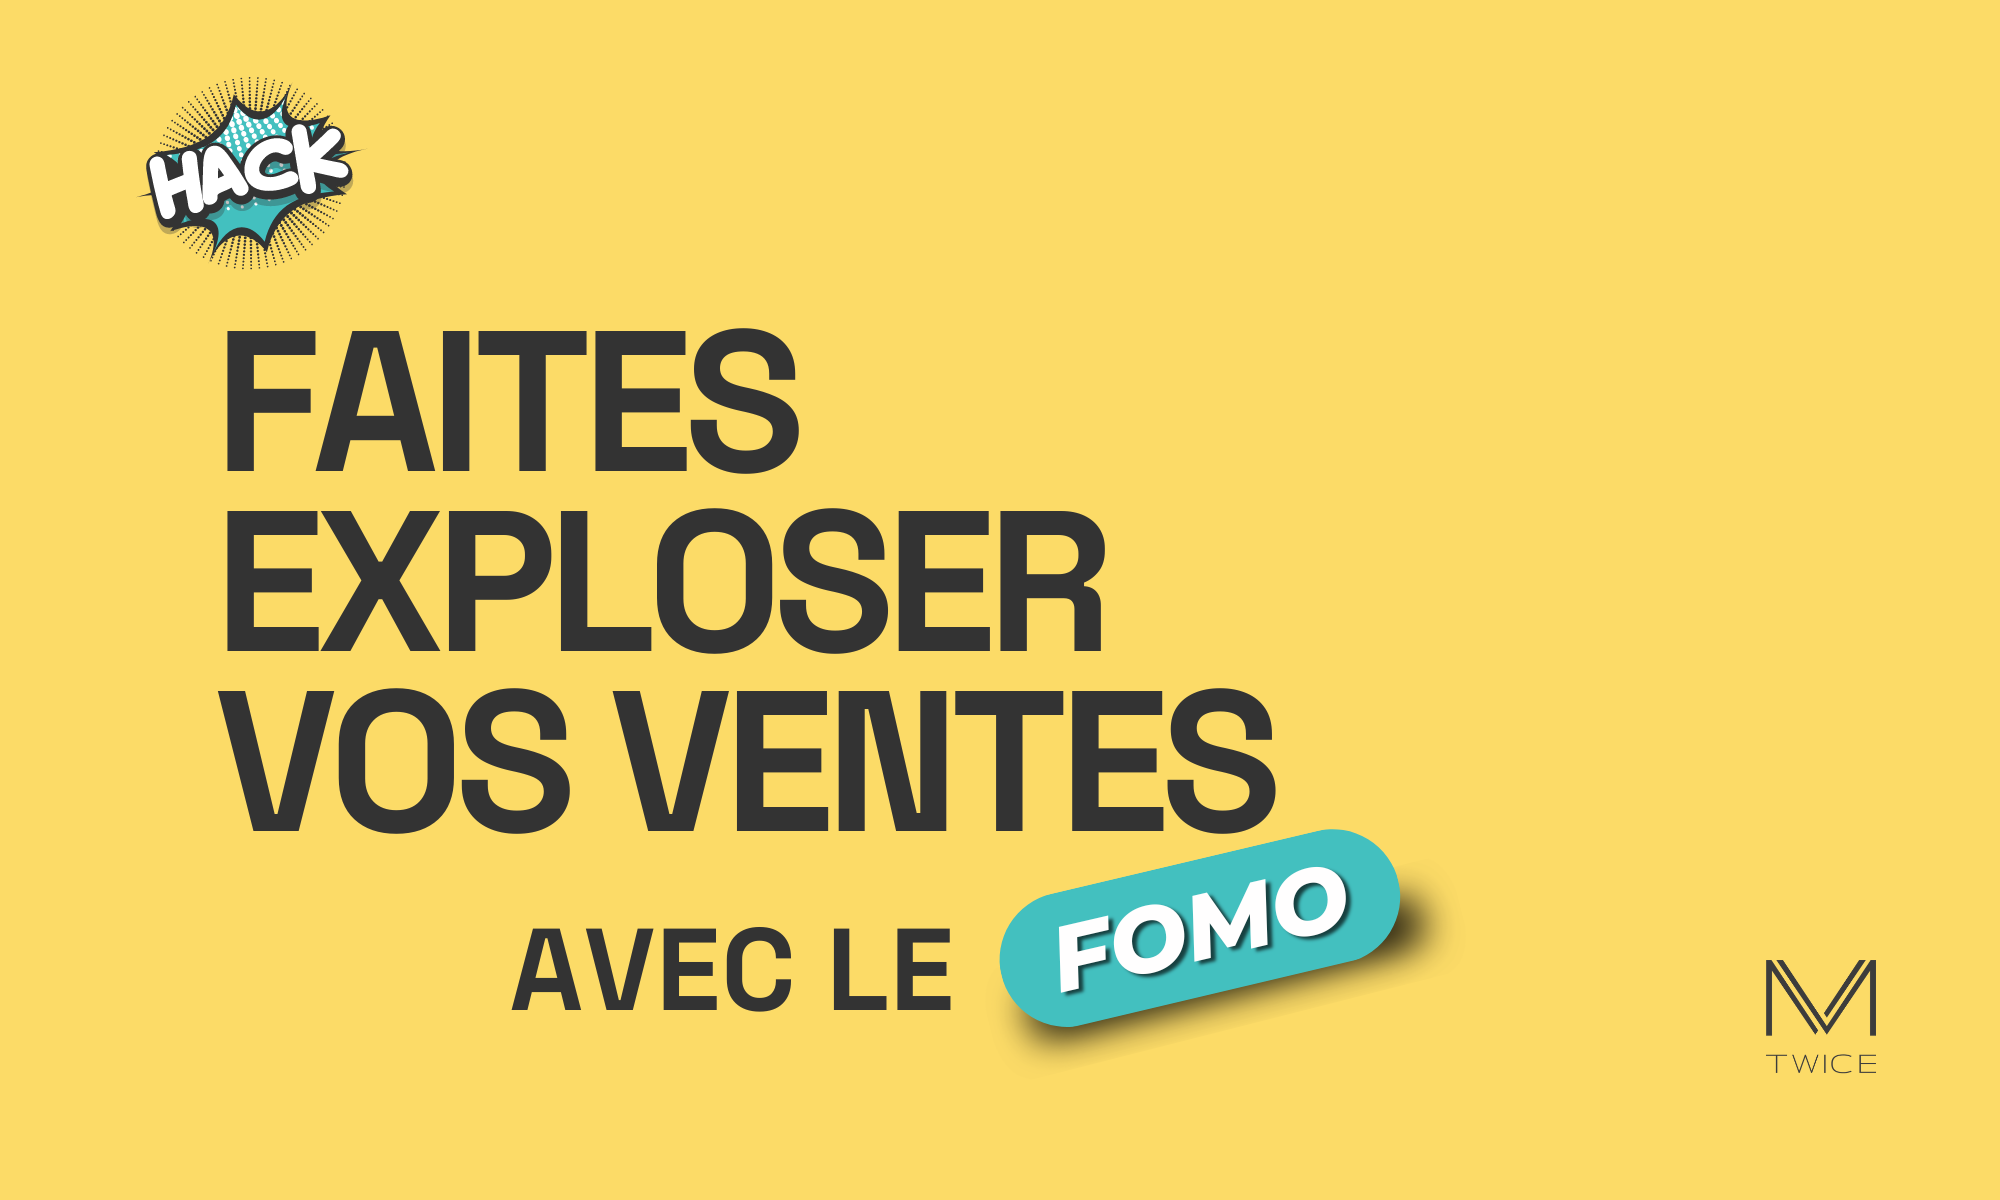 Image en vedette avec un fond jaunes et un texte en français qui dit : ‘Faites exploser vos ventes avec le FOMO’ avec le mot "FOMO" en jaune dans un élément dynamique turquoise. Le mot "HACK" dans une bulle de bande dessinée, indiquant une astuce ou une stratégie. Le logo ‘M TWICE’ est situé en bas à droite, indiquant l’entreprise ou le site web associé à ce growth hacks.